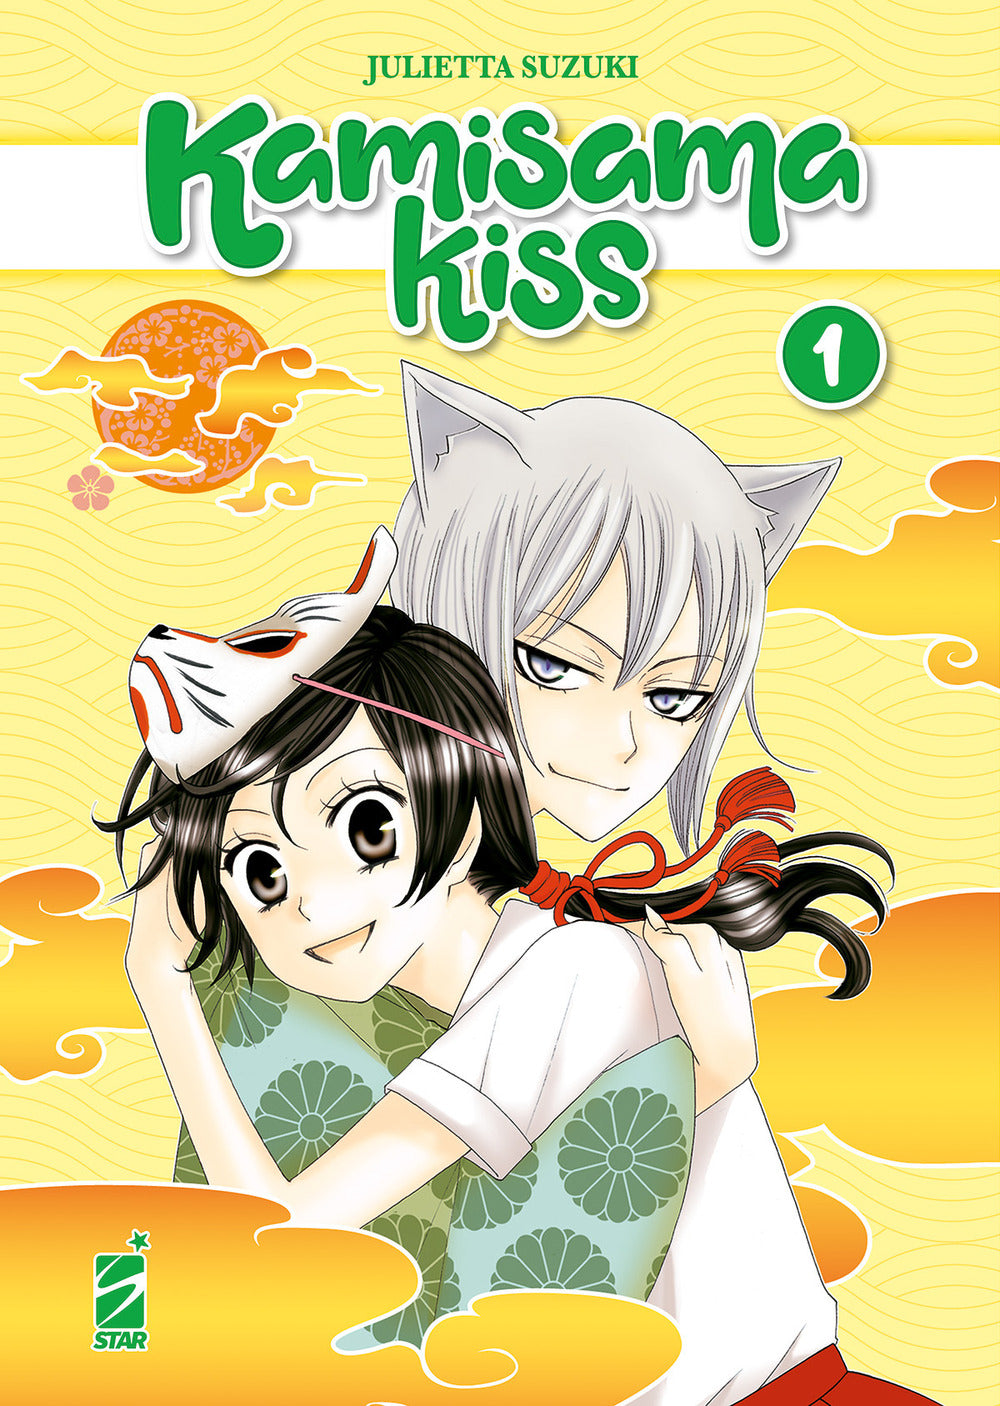 Kamisama kiss. New edition. Vol. 1.